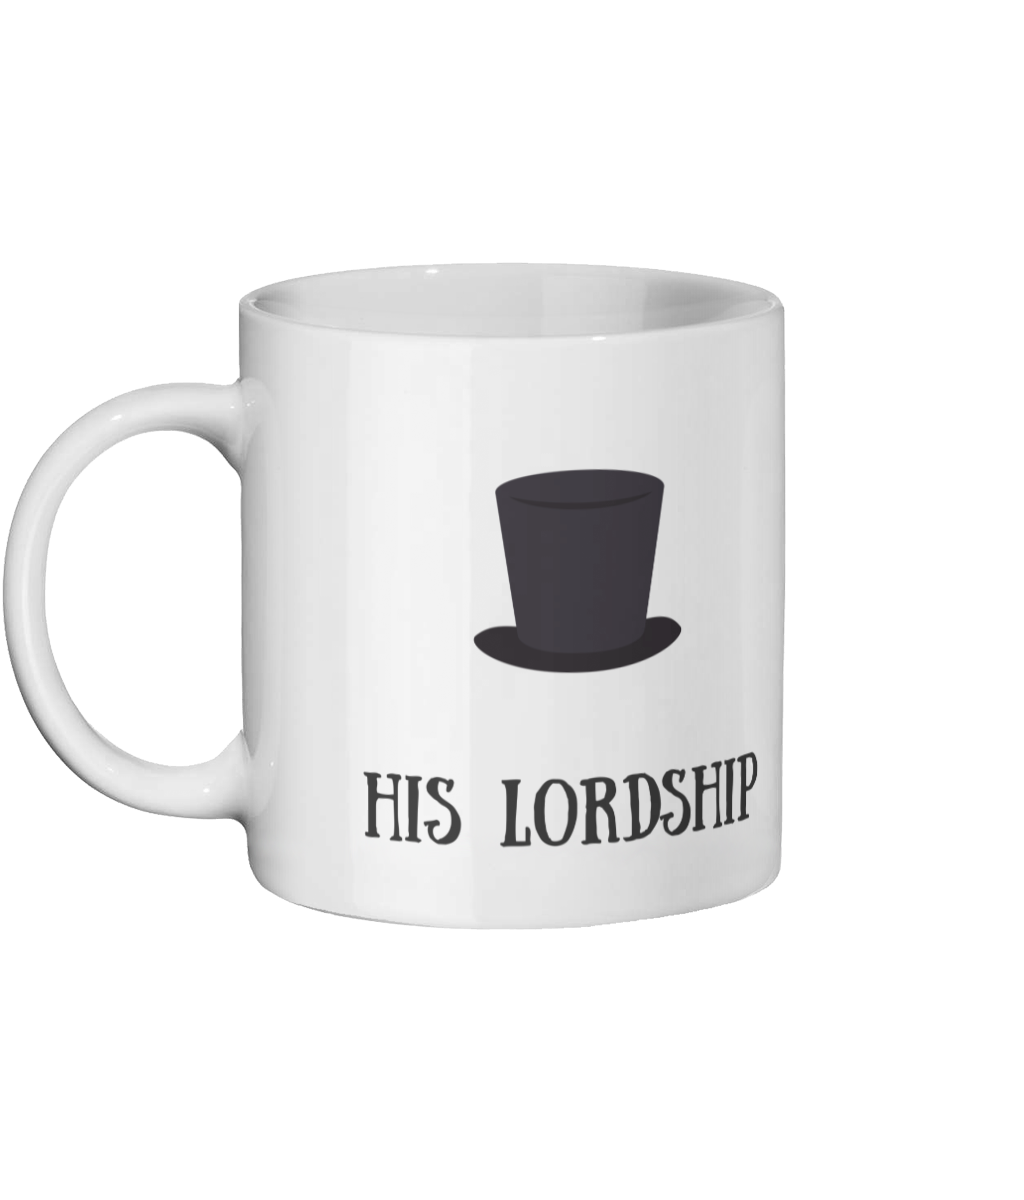 His Lordship Mug Left-side